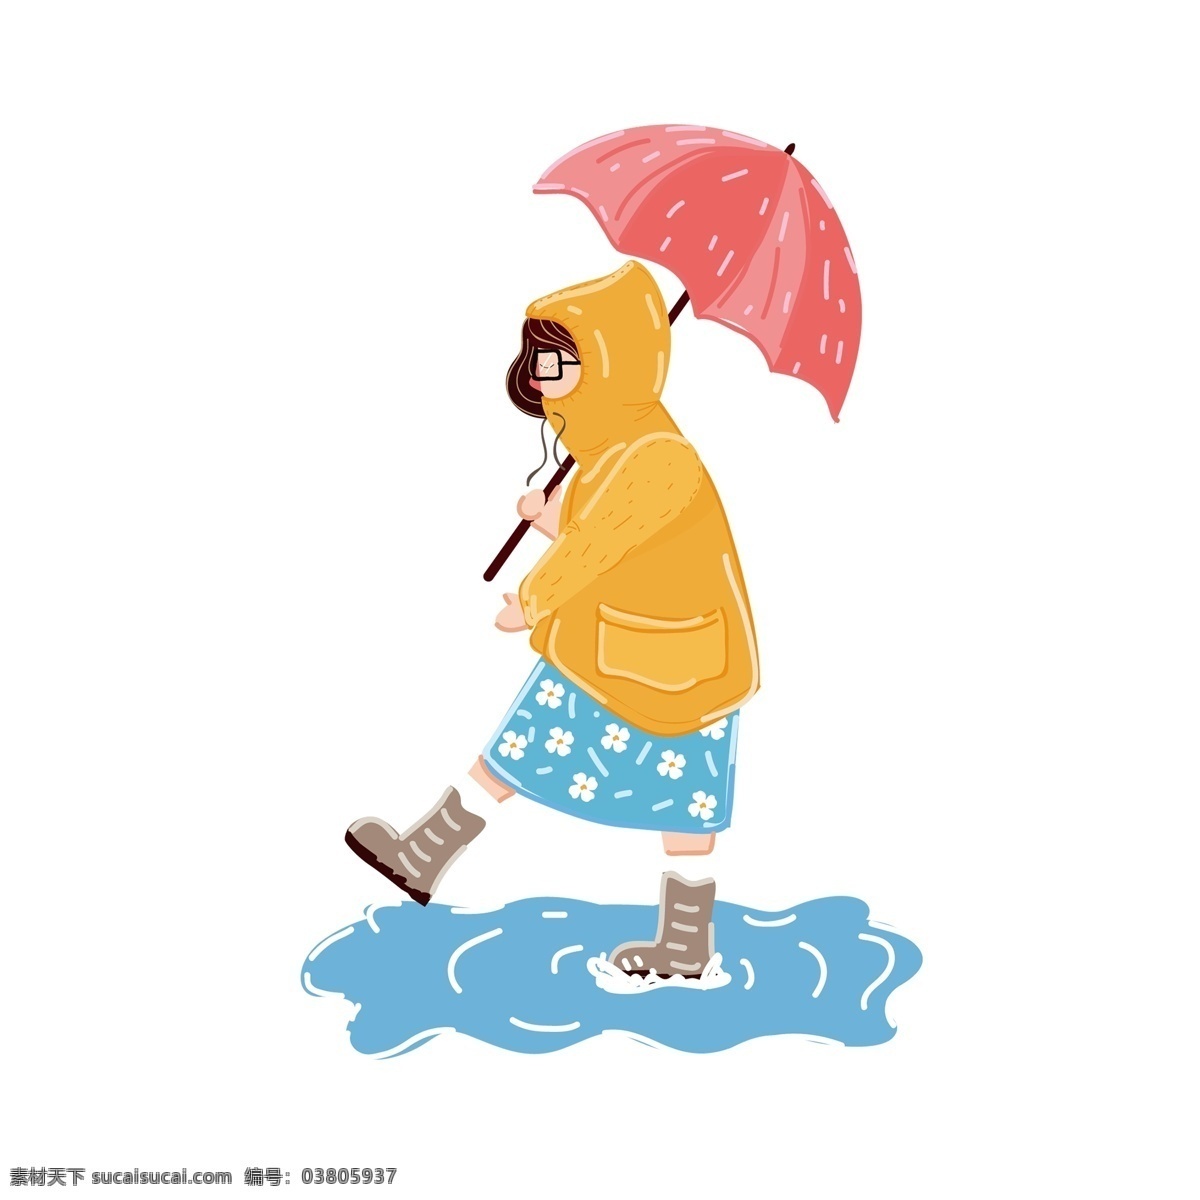 雨天 散步 小姑娘 装饰 元素 装饰元素 雨伞 黄色雨衣 水滴 水潭 少女 欢乐 雨鞋